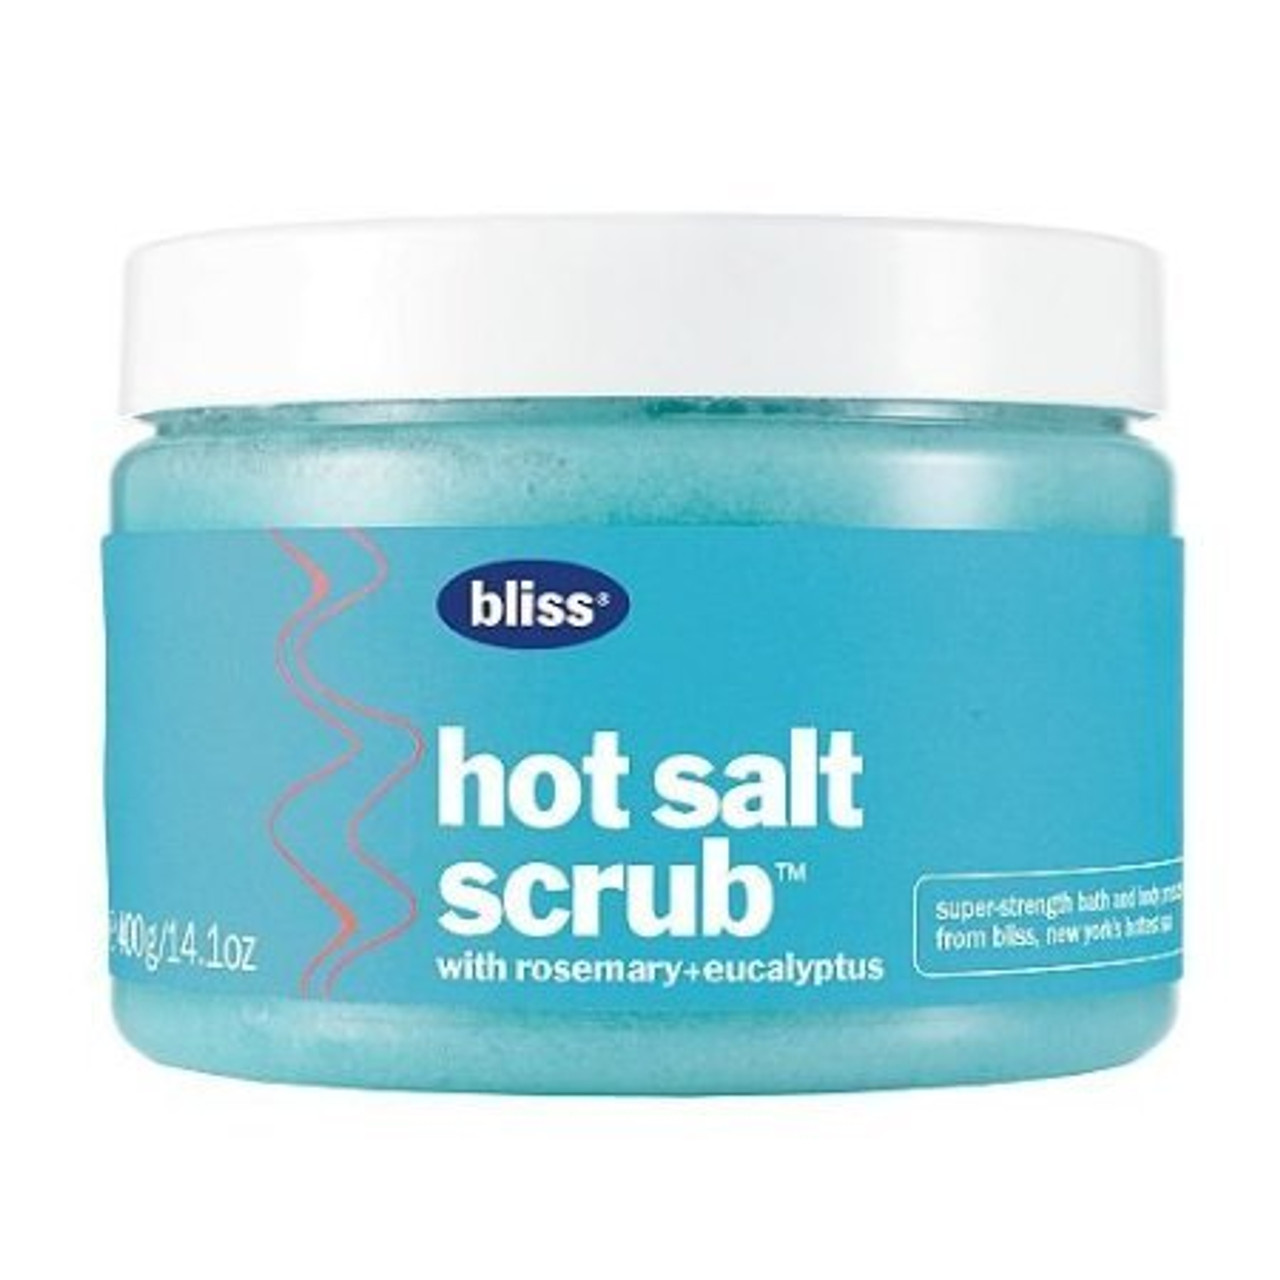 Bliss Hot Salt Scrub With Rosemary + Eucalyptus 14.1 oz